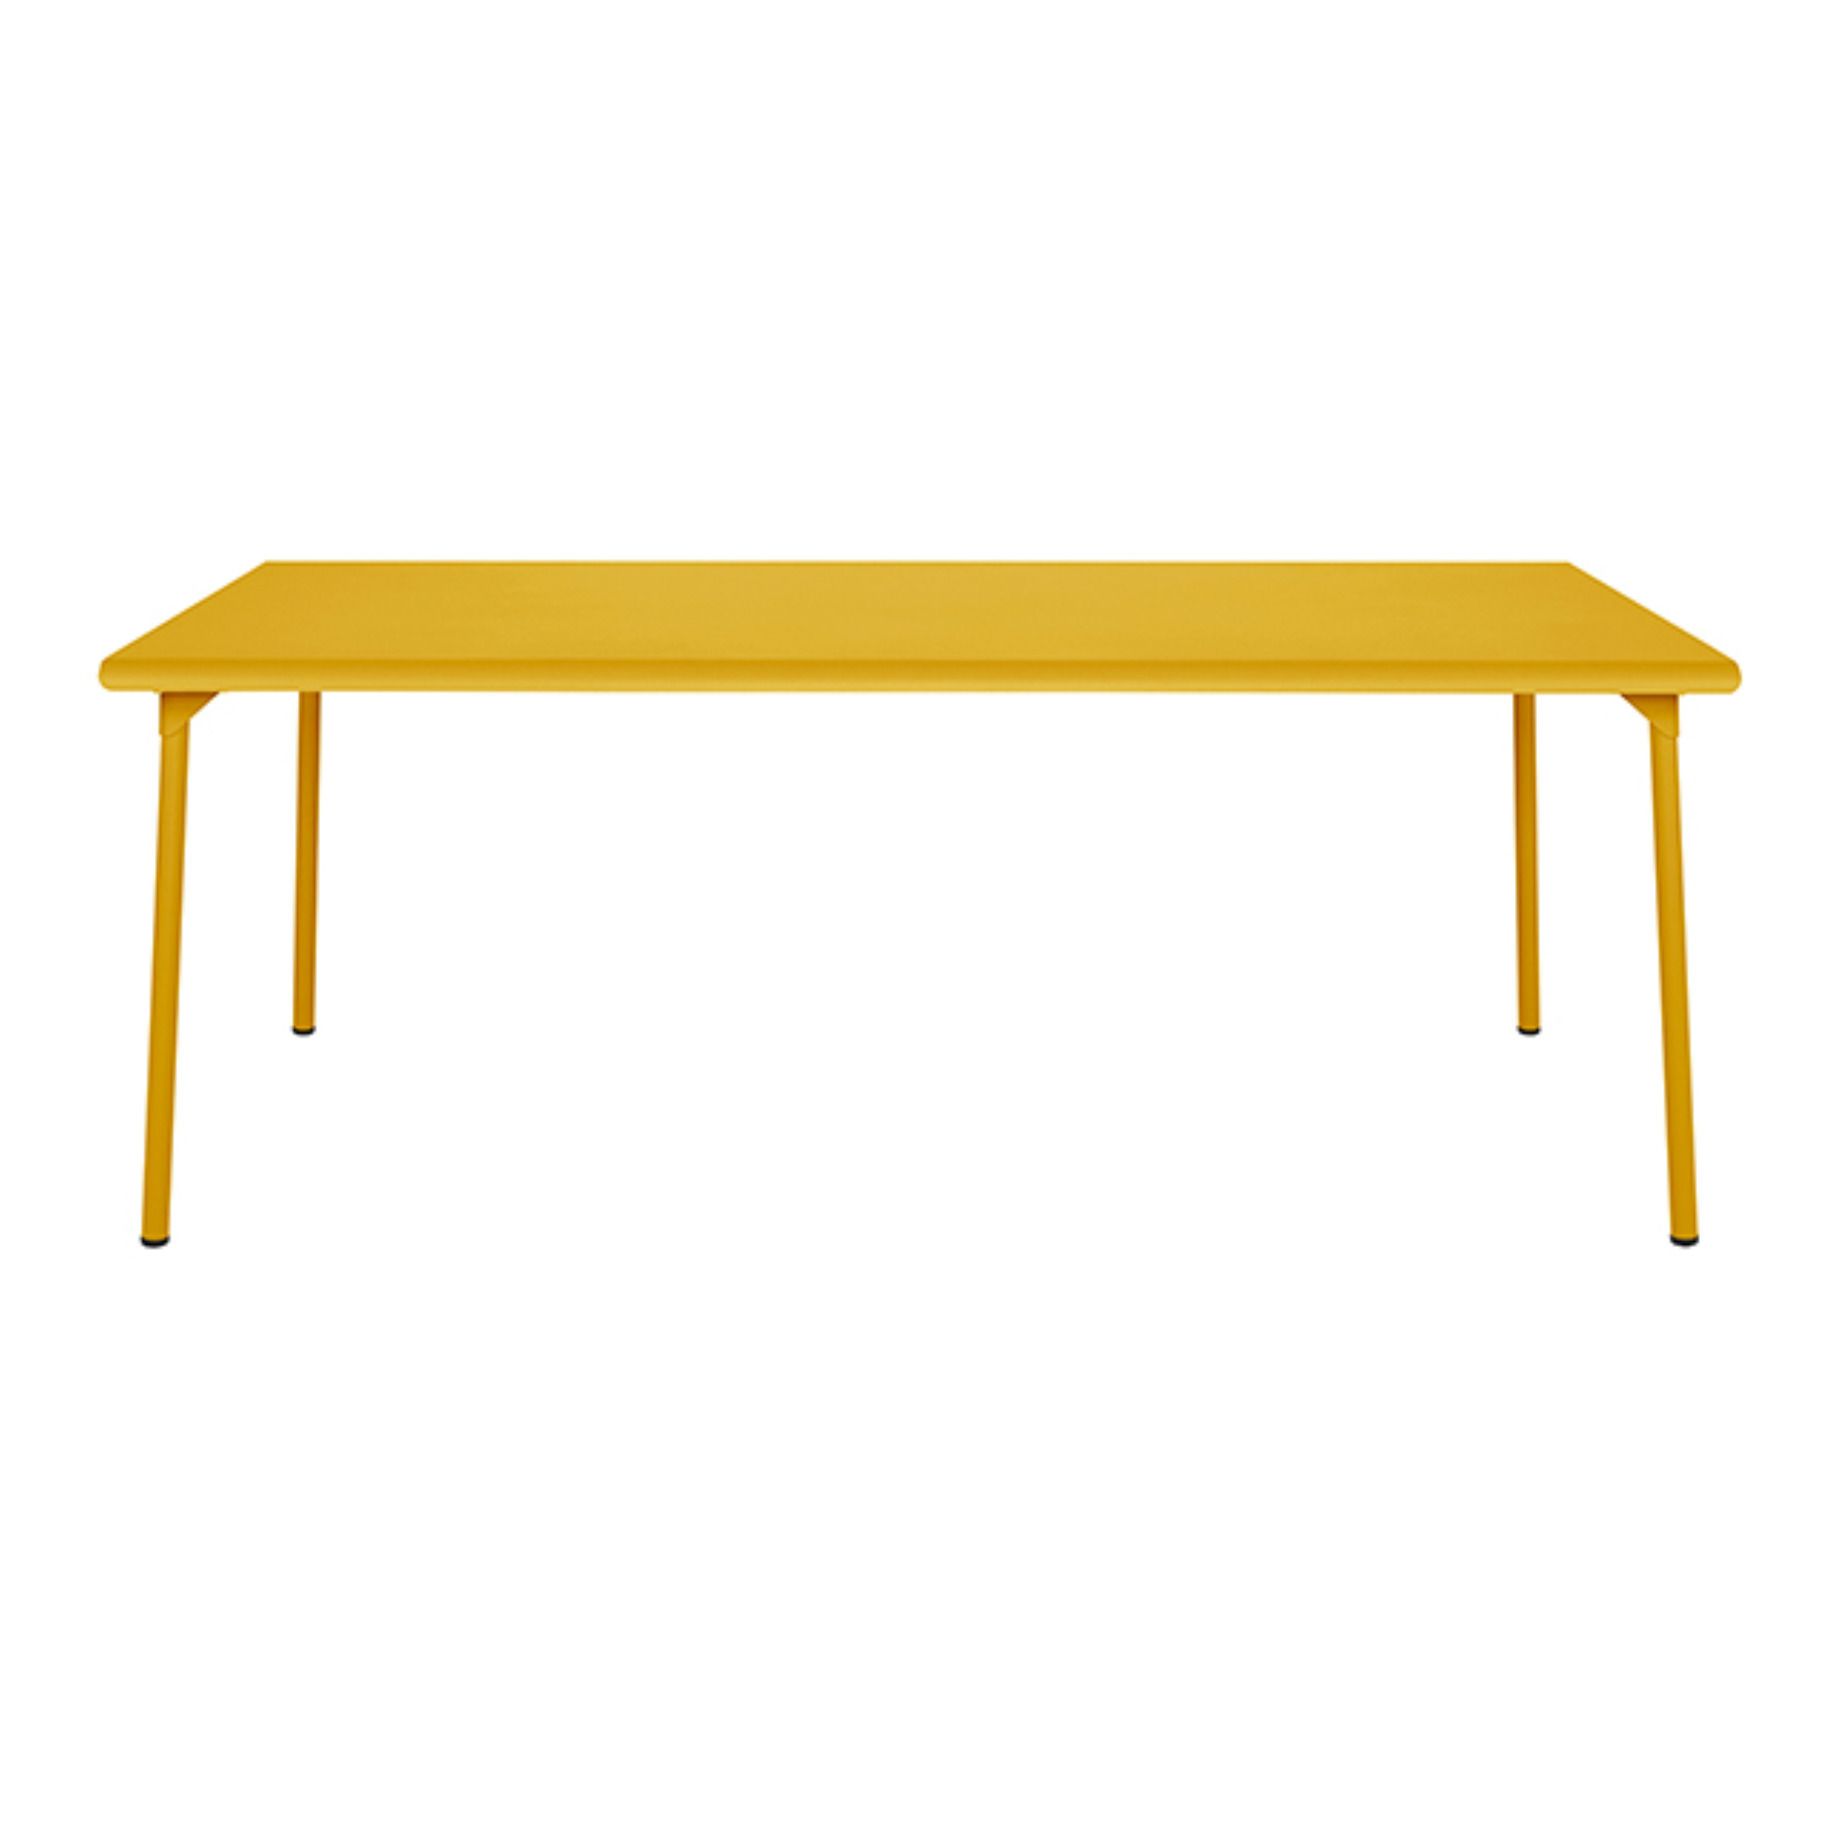 Tolix - Table outdoor Patio en inox - 240x100 cm - Jaune moutarde